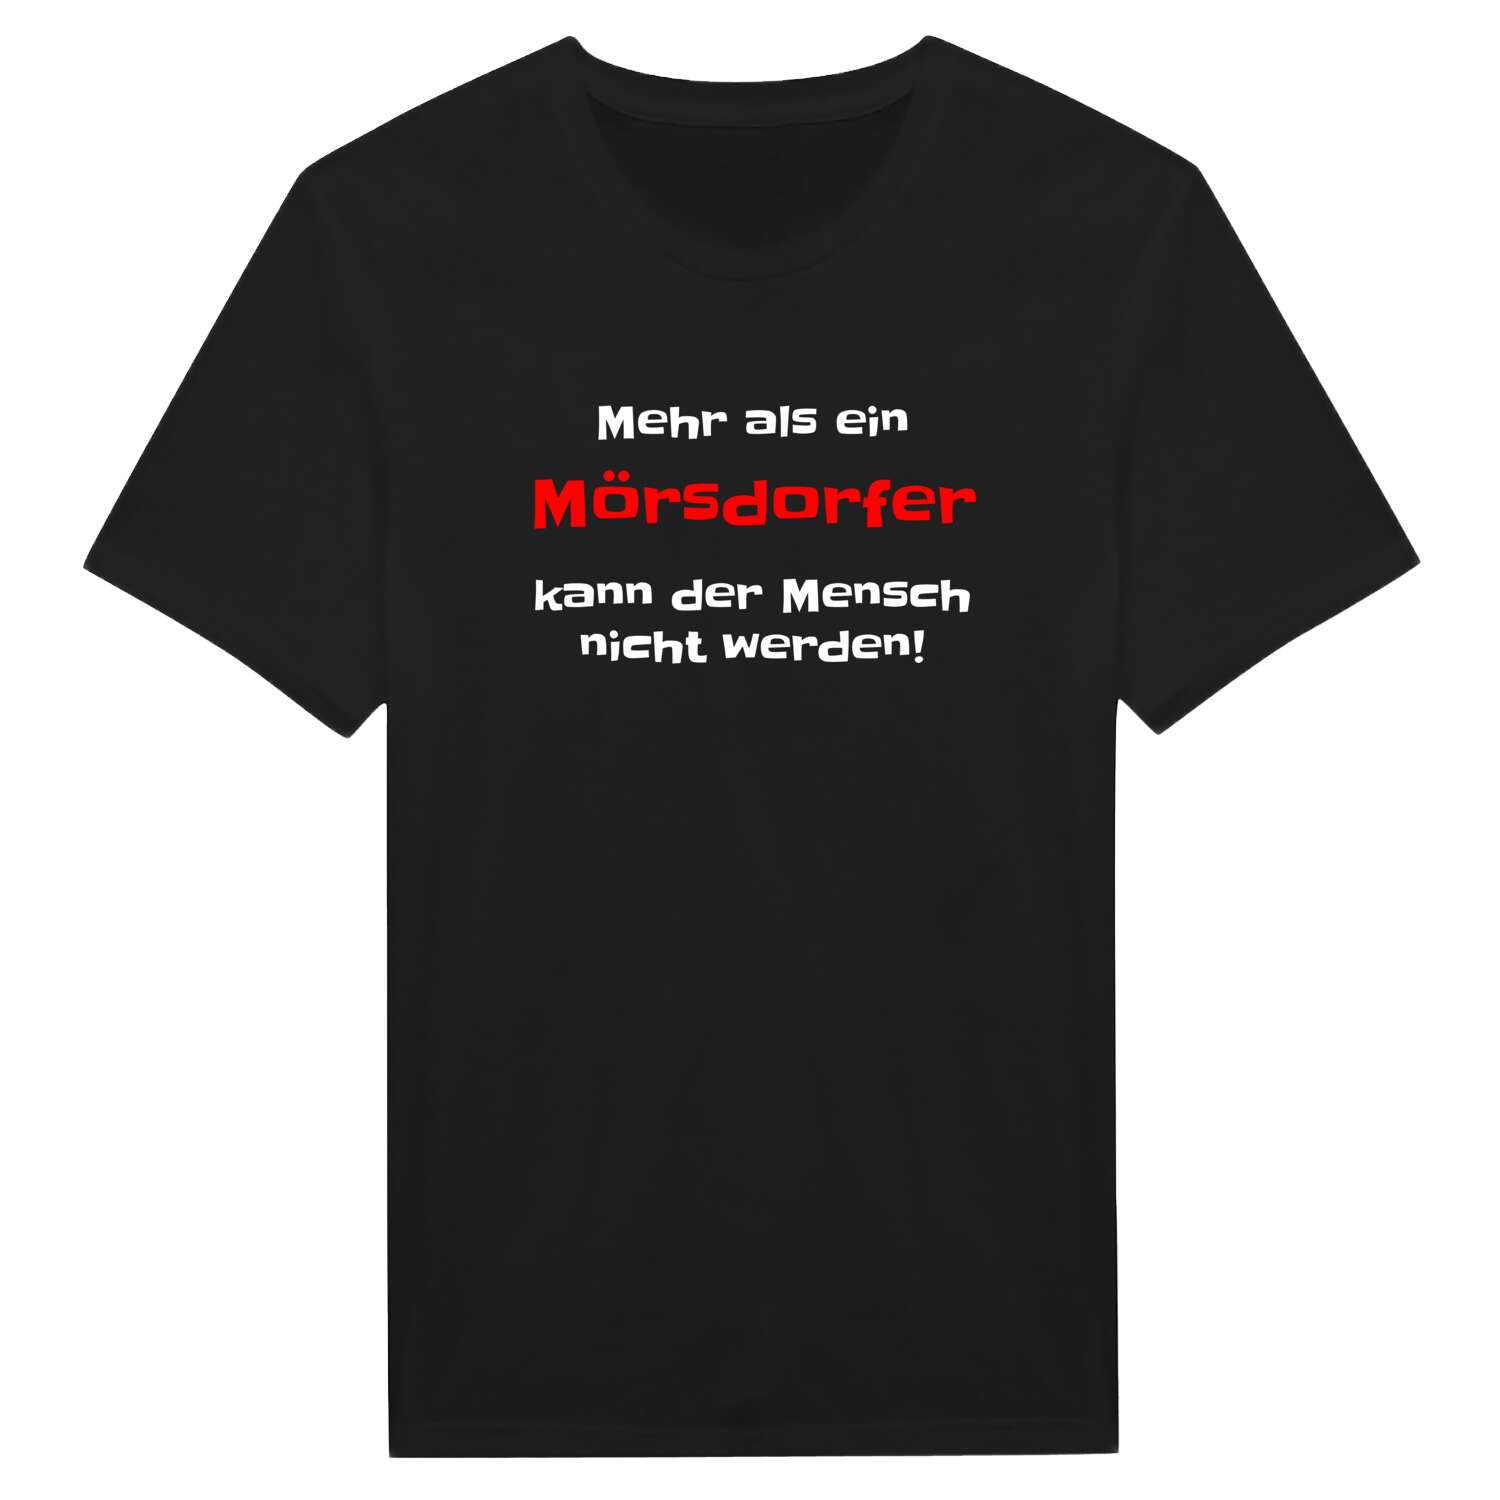 Mörsdorf T-Shirt »Mehr als ein«